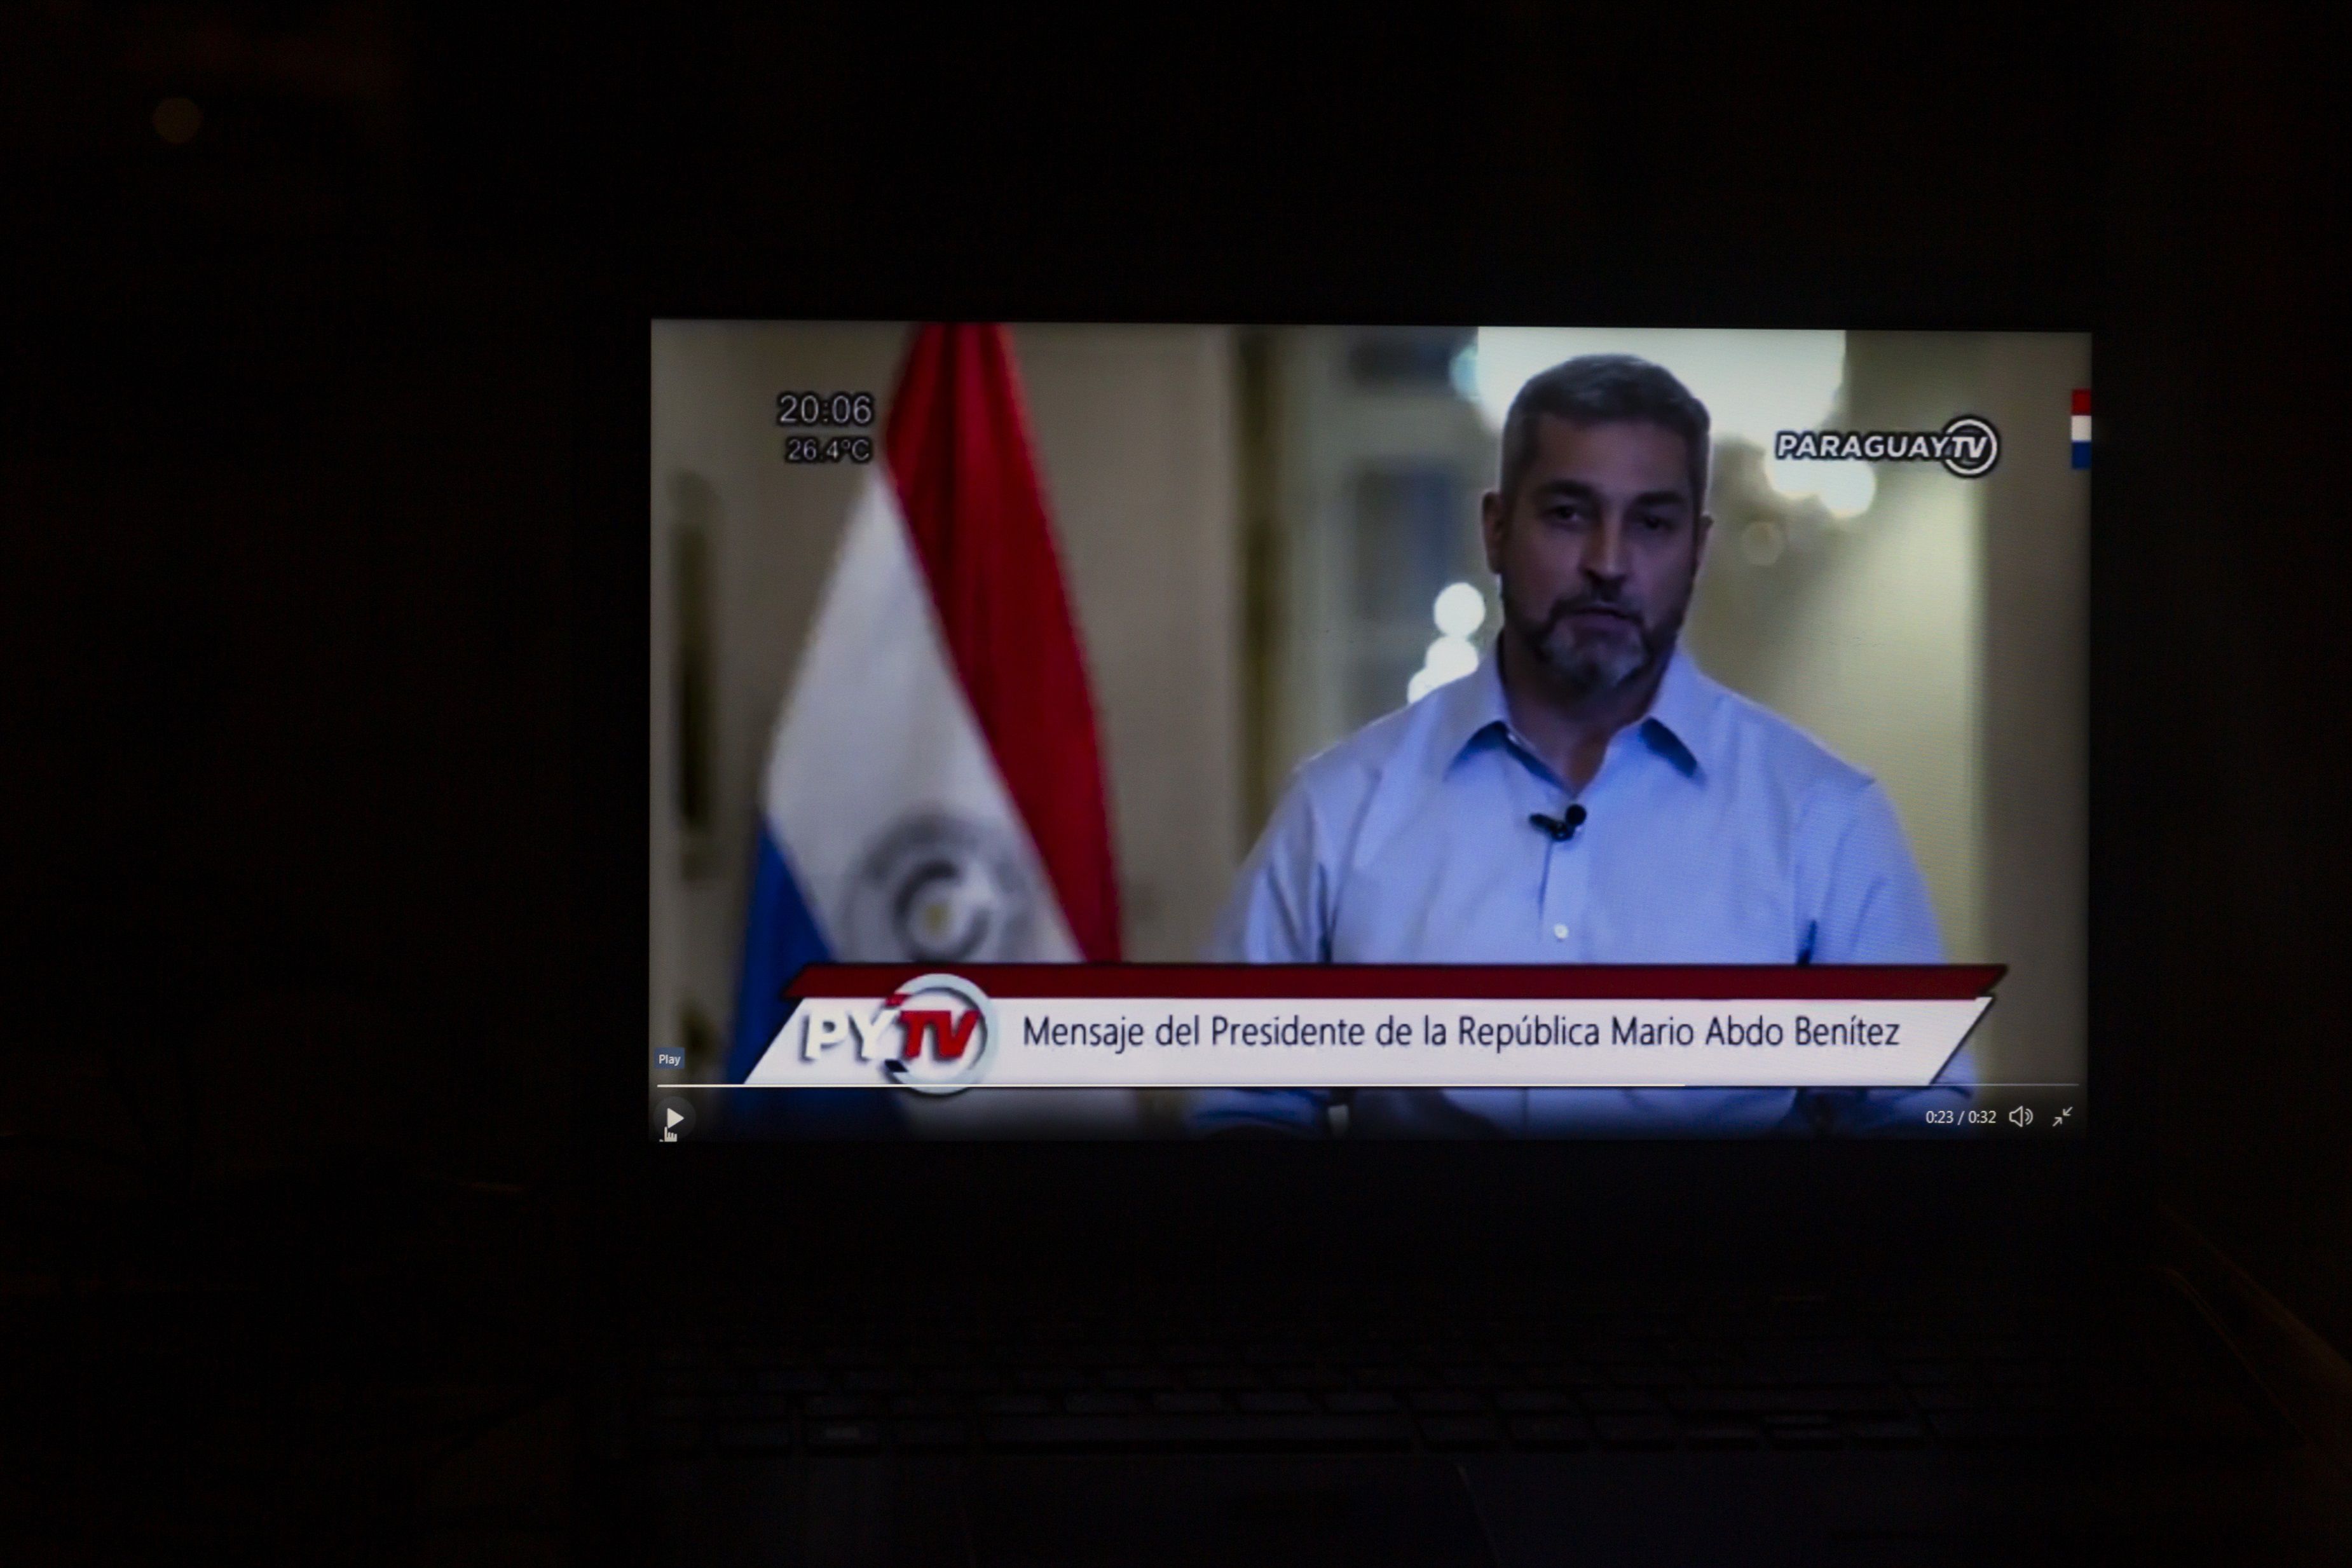 07/03/2021 El presidente de Paraguay anunciando la salida de cuatro ministros de su Gobierno en la televisión pública el sábado 6 de marzo. POLITICA CONTACTOPHOTO 